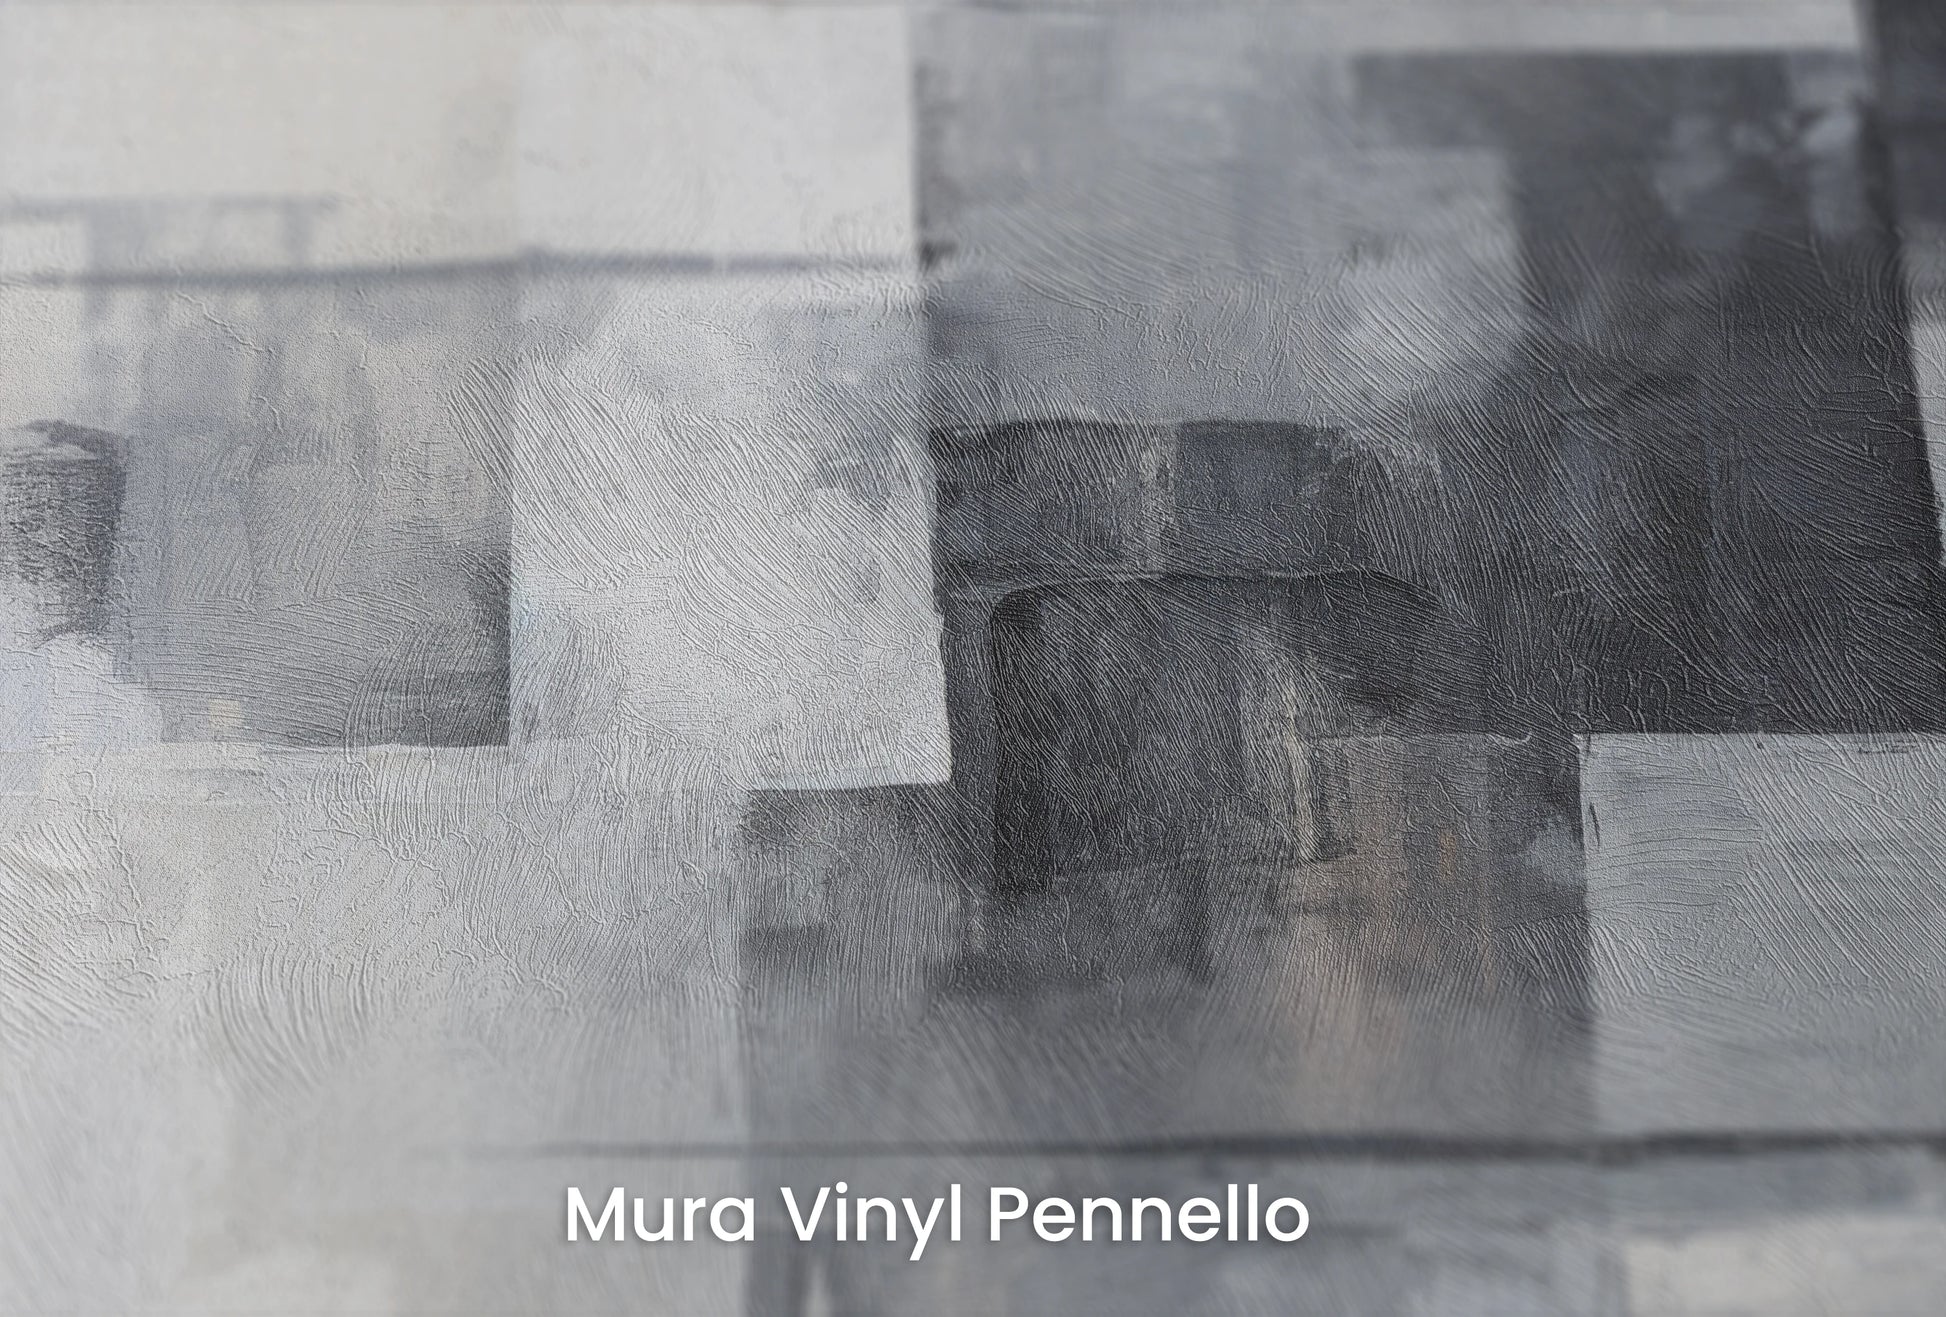 Zbliżenie na artystyczną fototapetę o nazwie Shades and Tones na podłożu Mura Vinyl Pennello - faktura pociągnięć pędzla malarskiego.